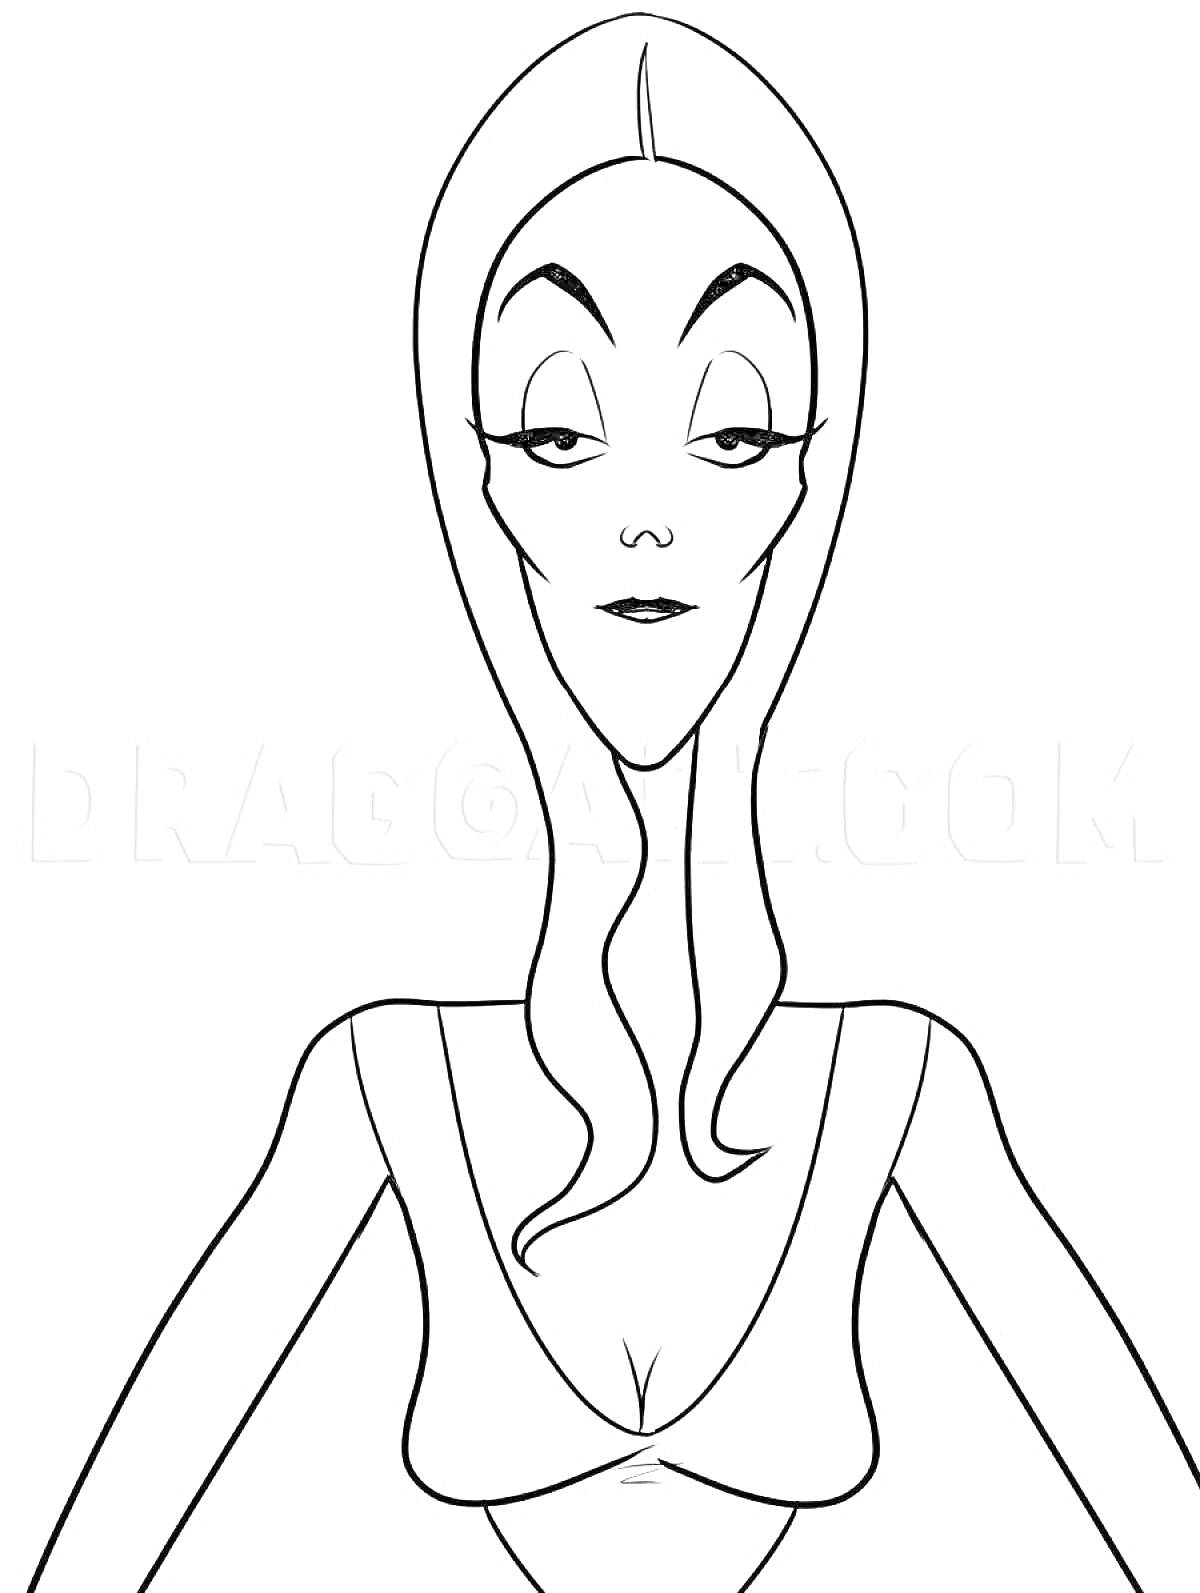 Раскраска Женский персонаж в стиле Аддамс с длинными распущенными волосами и выразительными глазами